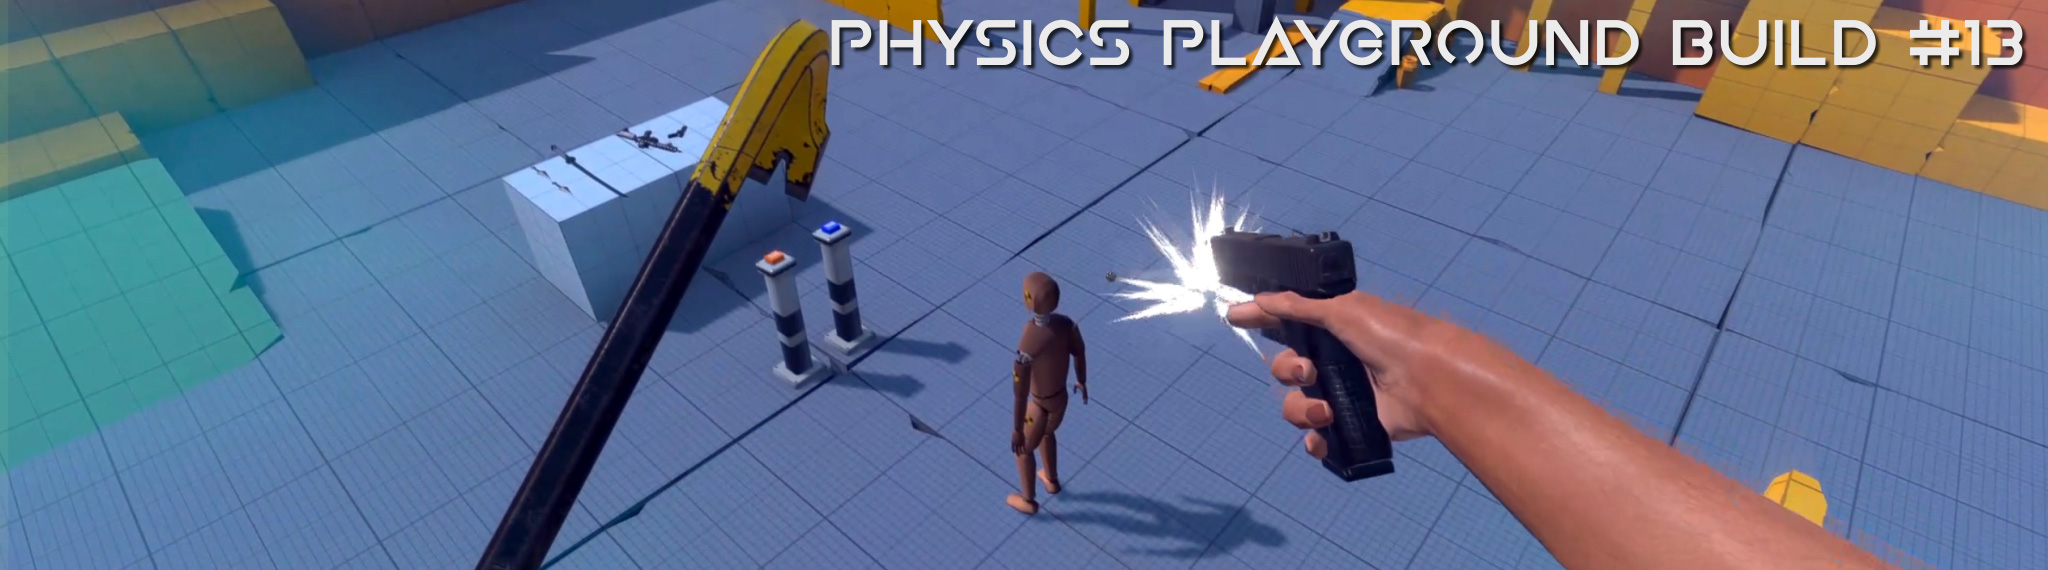 VR Physics Playground